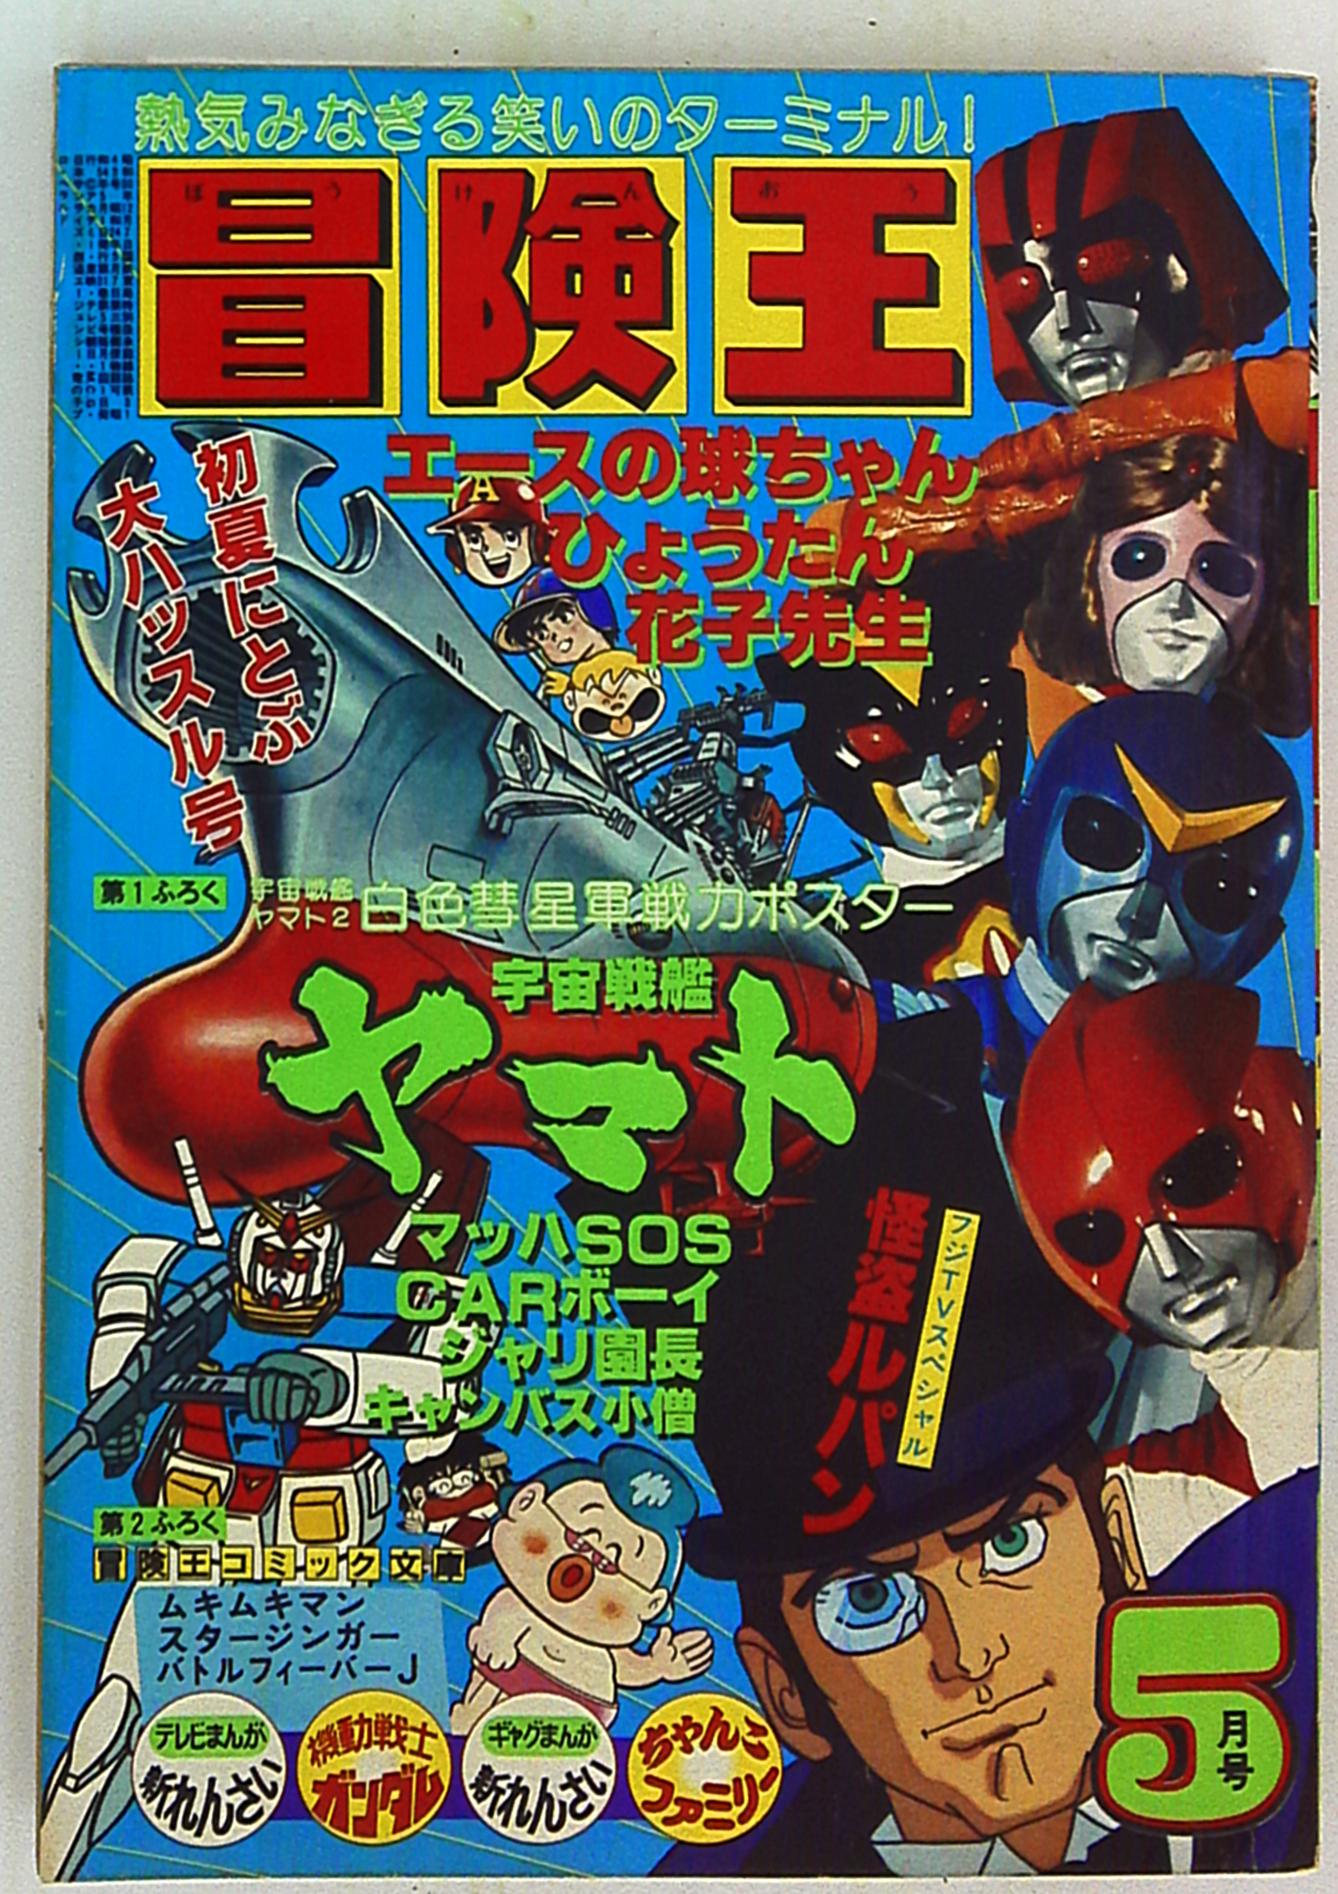 秋田書店 1979年(昭和54年)の漫画雑誌 冒険王 1979年(昭和54年)05月号